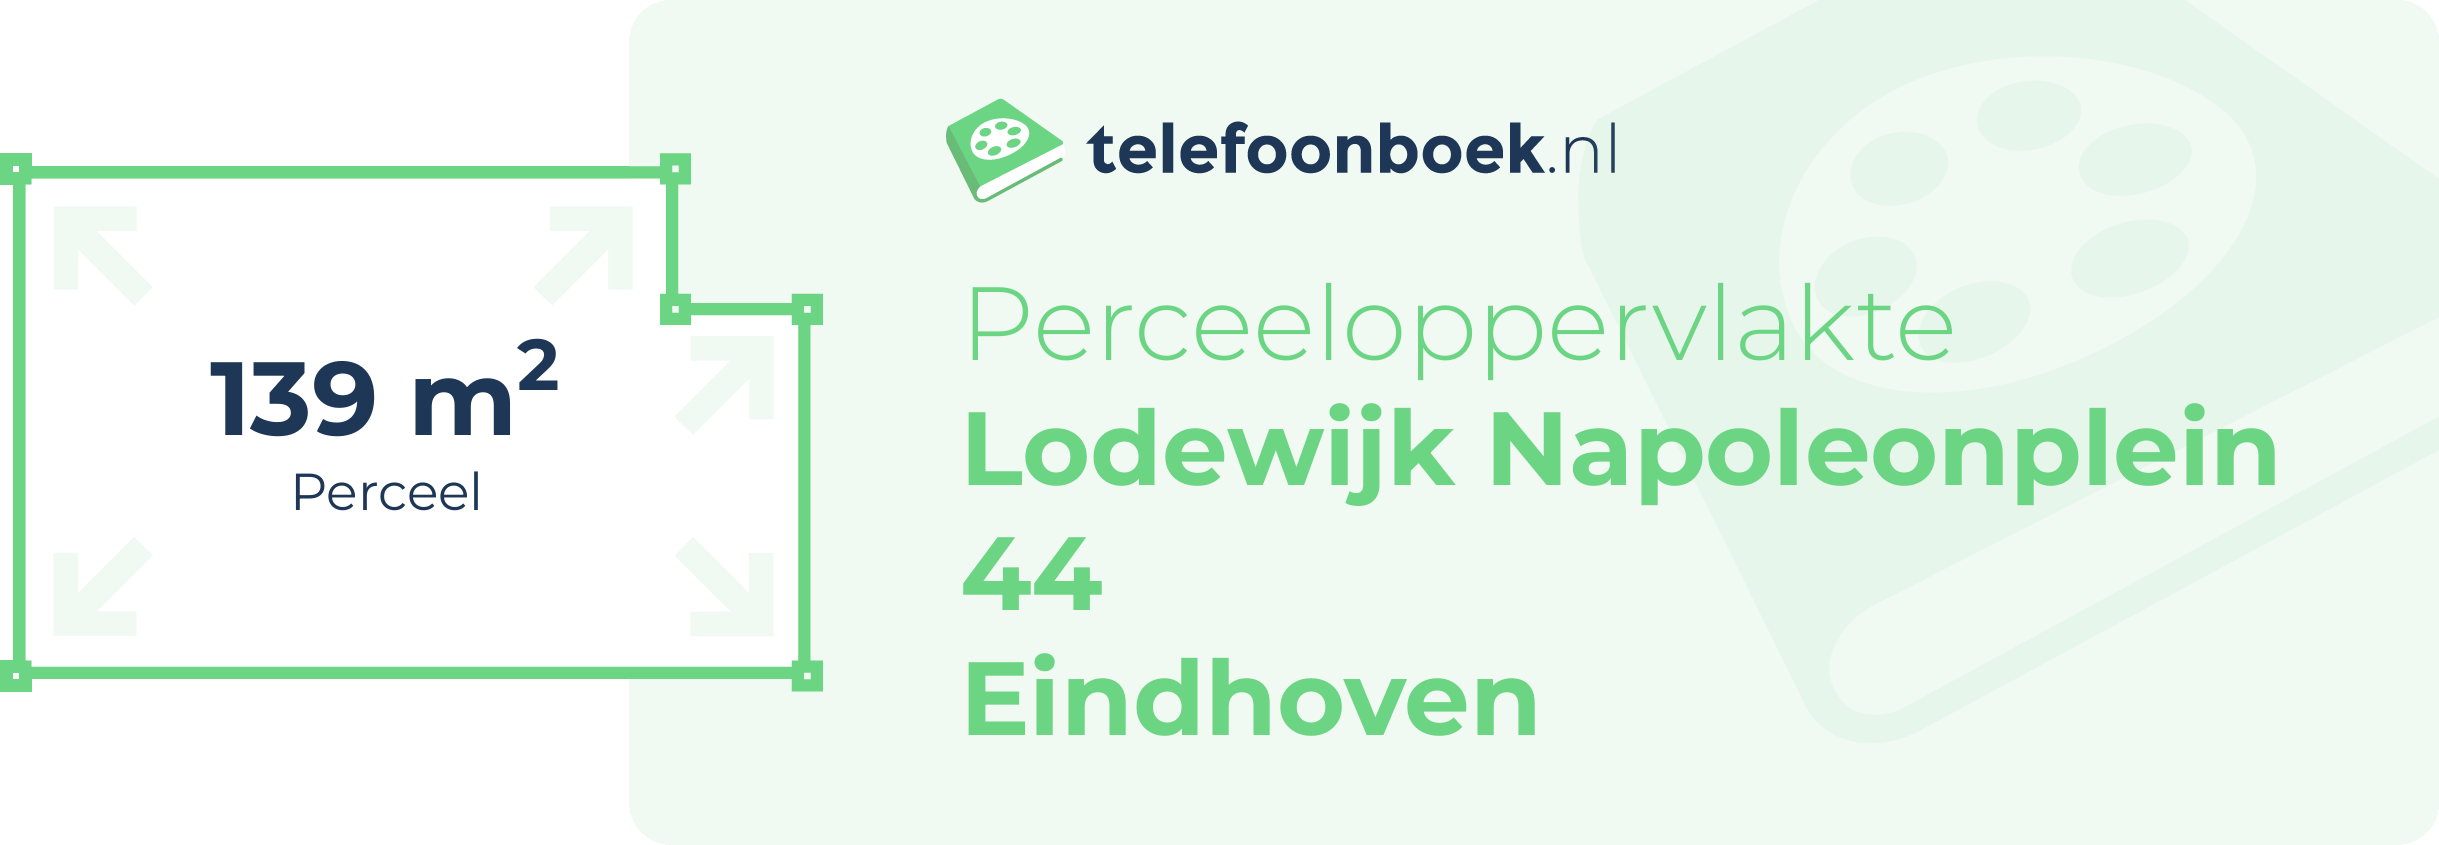 Perceeloppervlakte Lodewijk Napoleonplein 44 Eindhoven